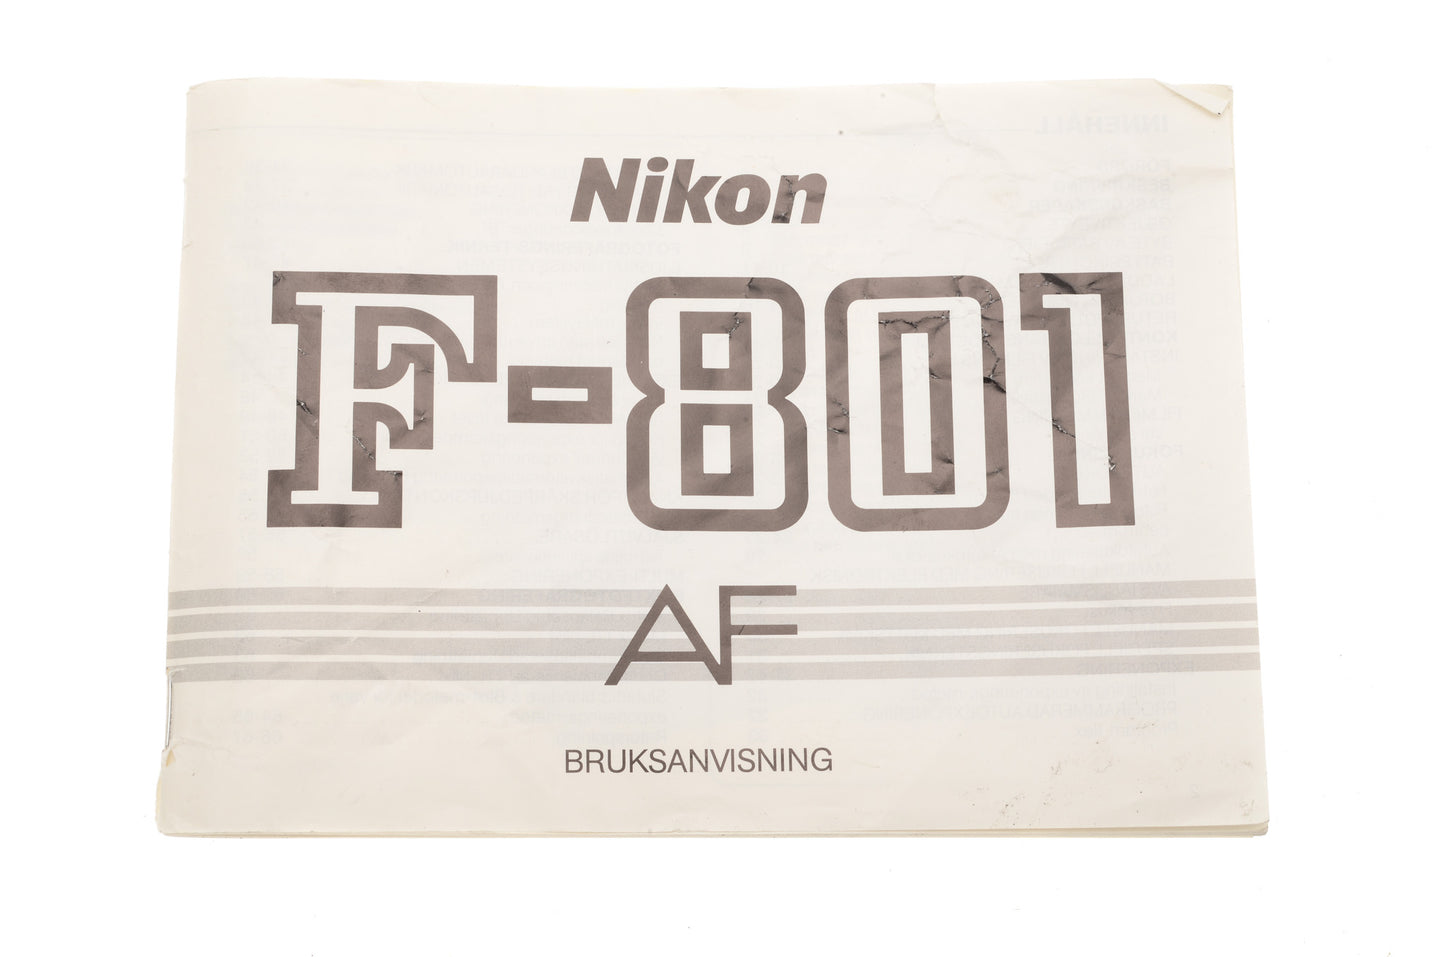 Nikon F-801 AF Instructions